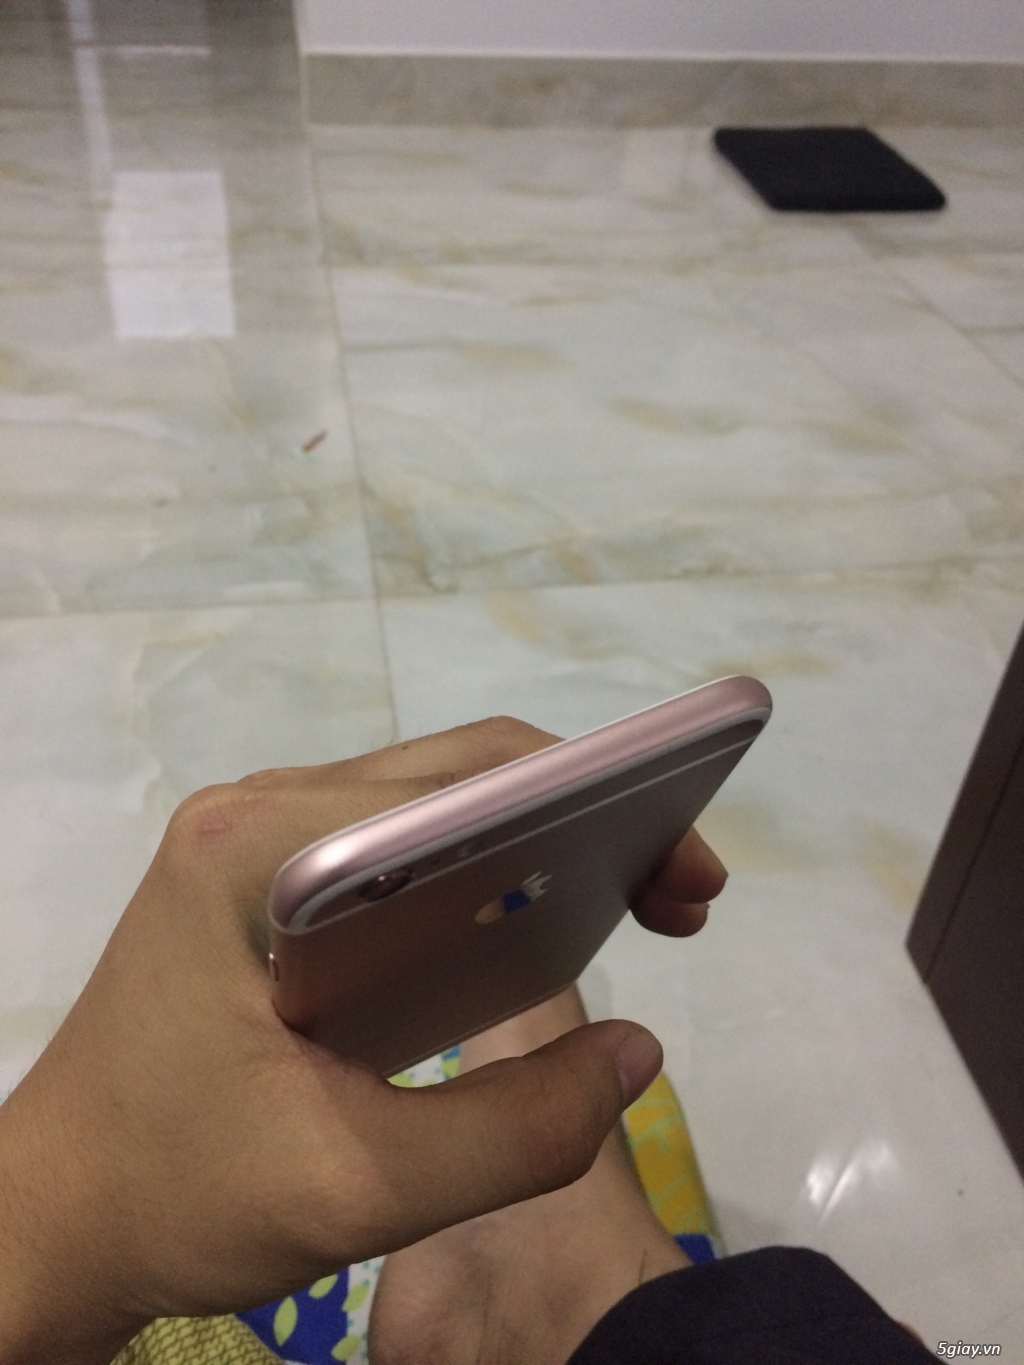 Bán Iphone 6s Plus Vàng Hồng 16GB Gò Vấp - 1